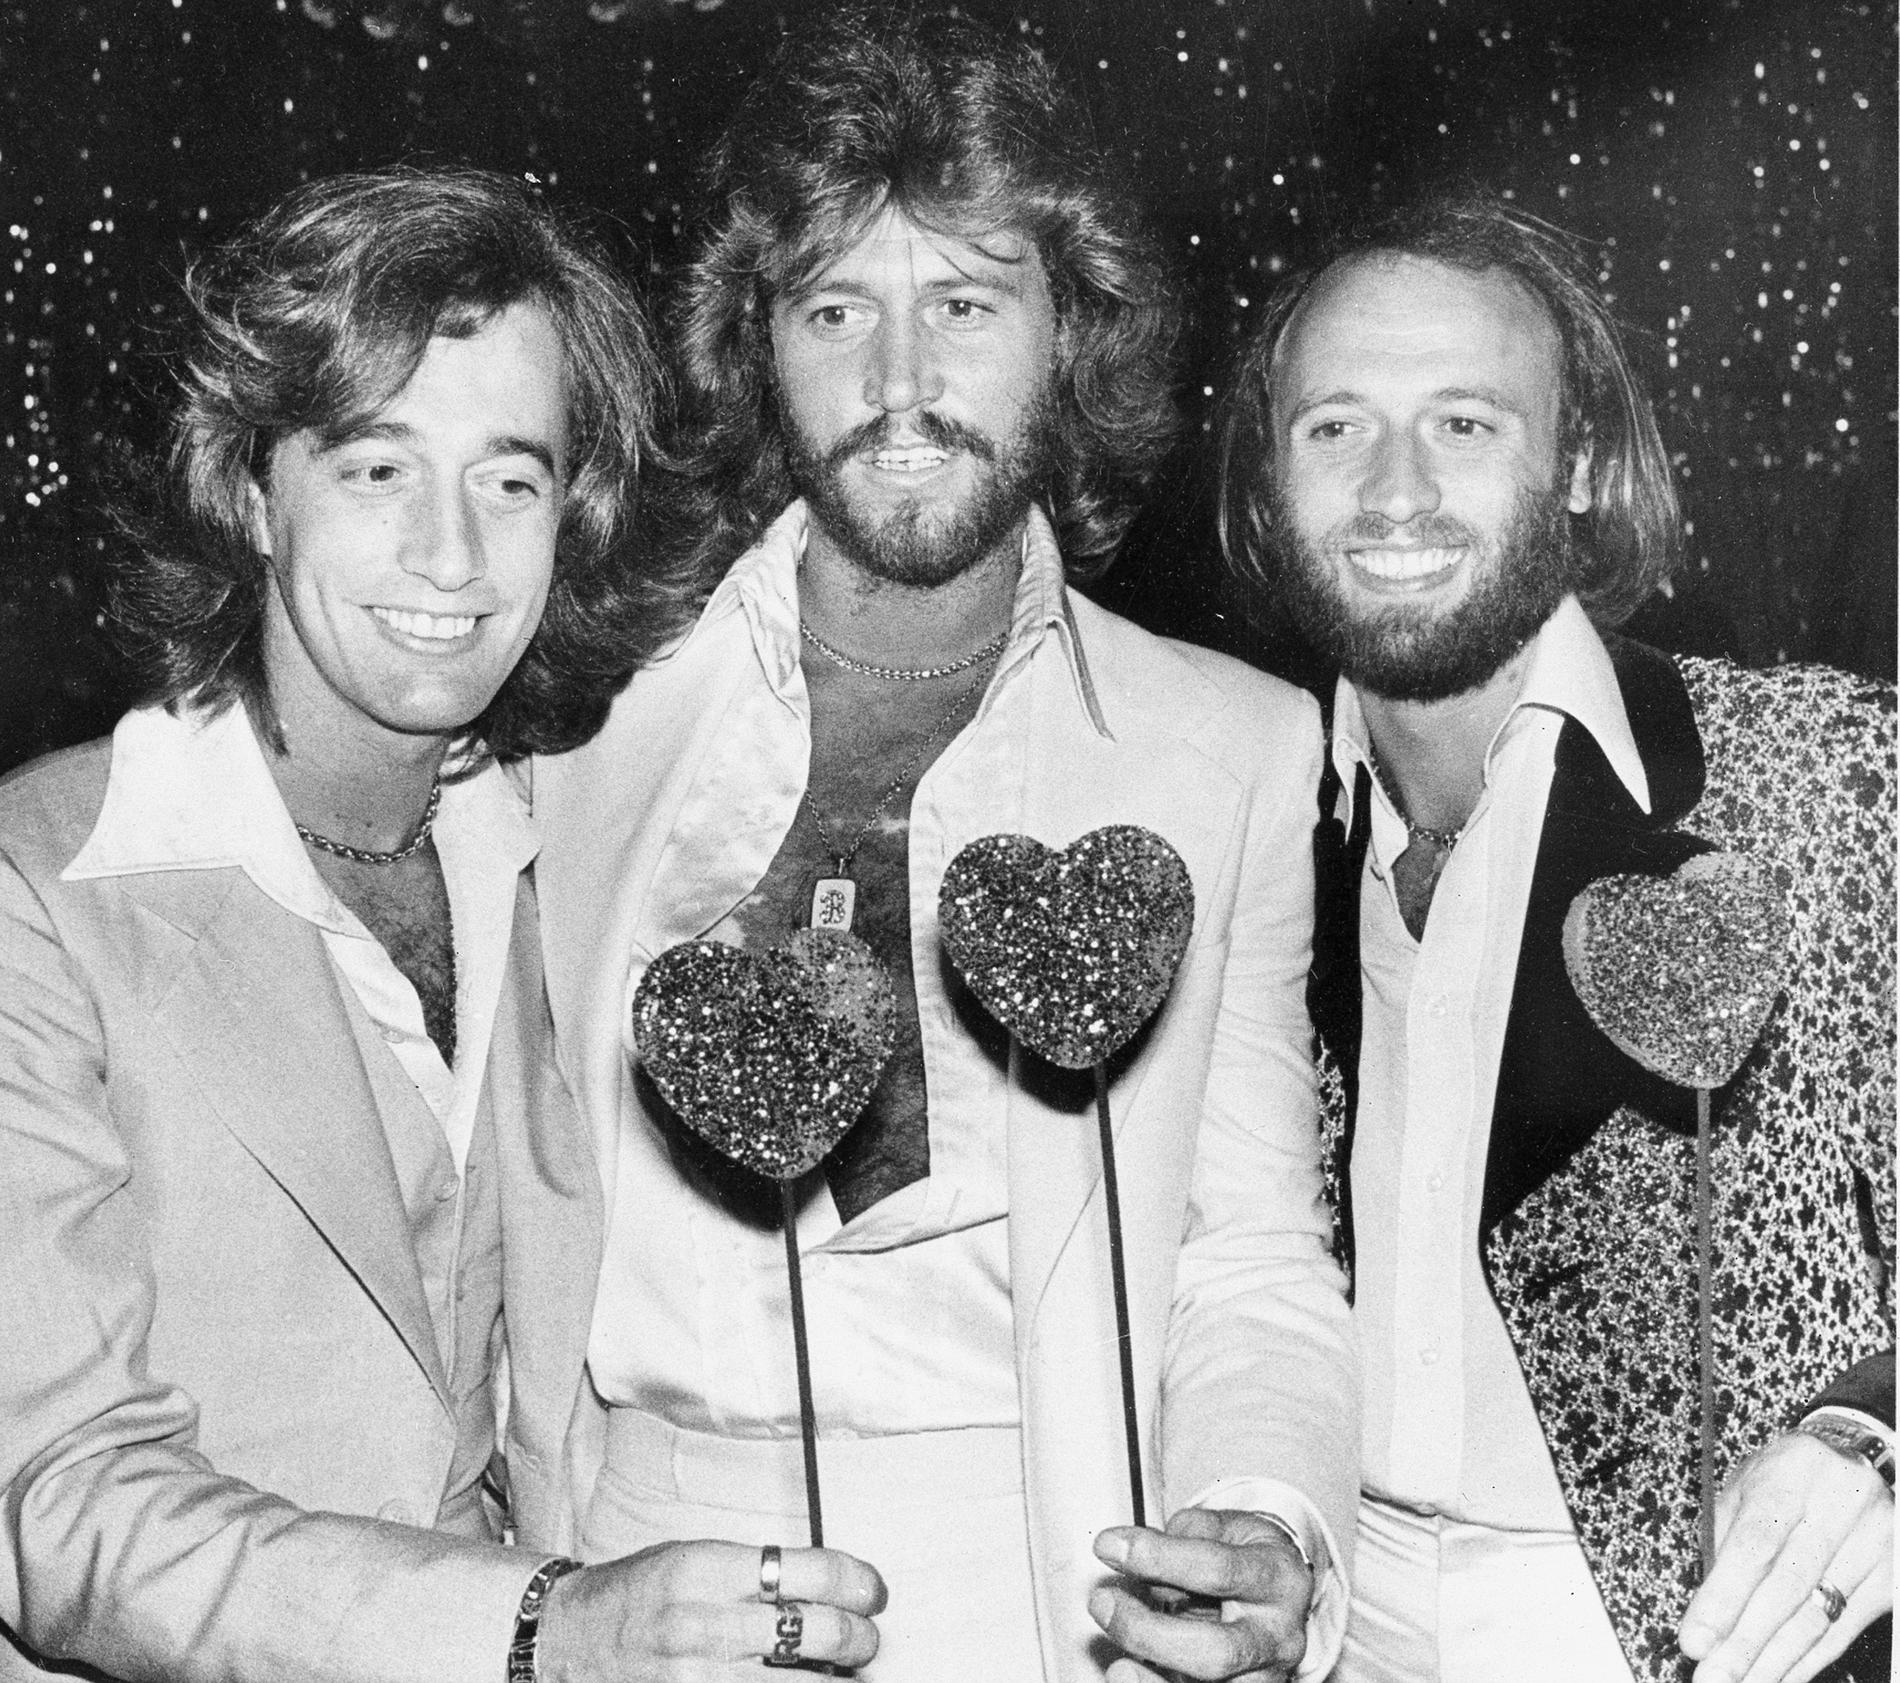 Barry Gibb i mitten mellan sina bröder Robin och Maurice som utgjorde Bee Gees, på en bild från 1978.